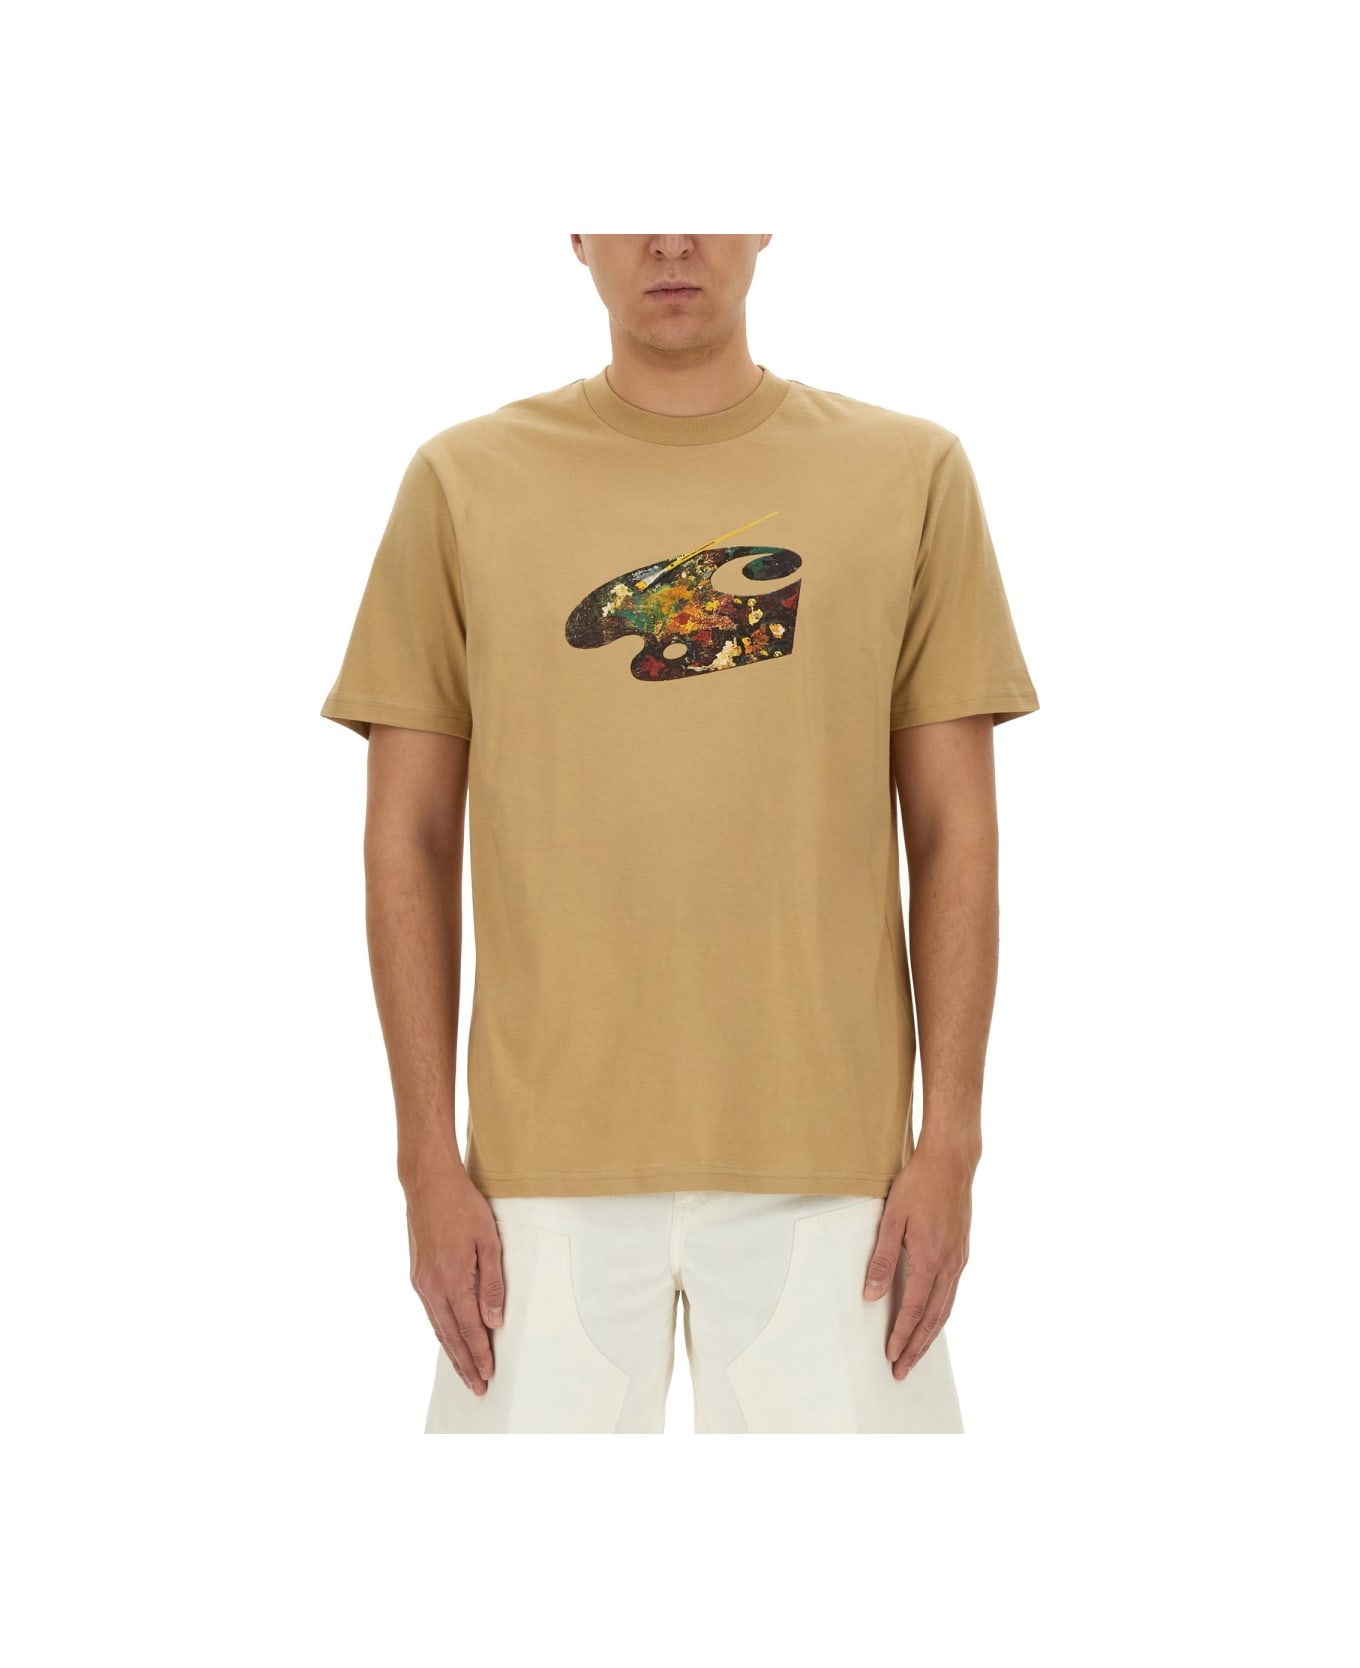 Carhartt T-shirt "palette" - BEIGE